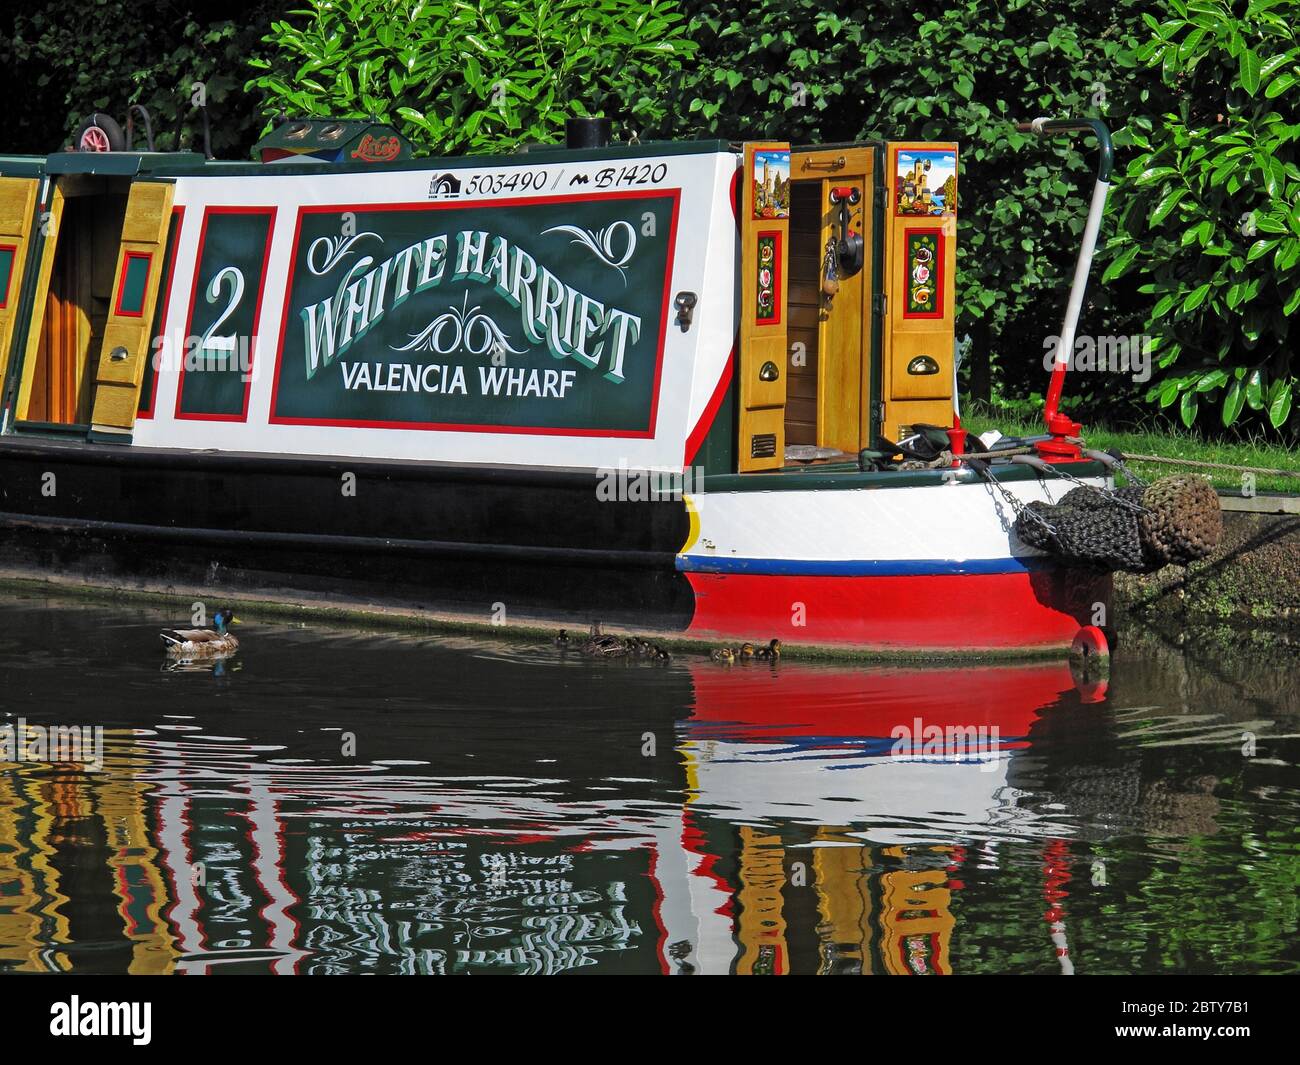 503490 ,B1420 White Harriet Valencia Wharf narrowboat, chiatta sul canale, Cheshire, Inghilterra, Regno Unito, riflessione Foto Stock